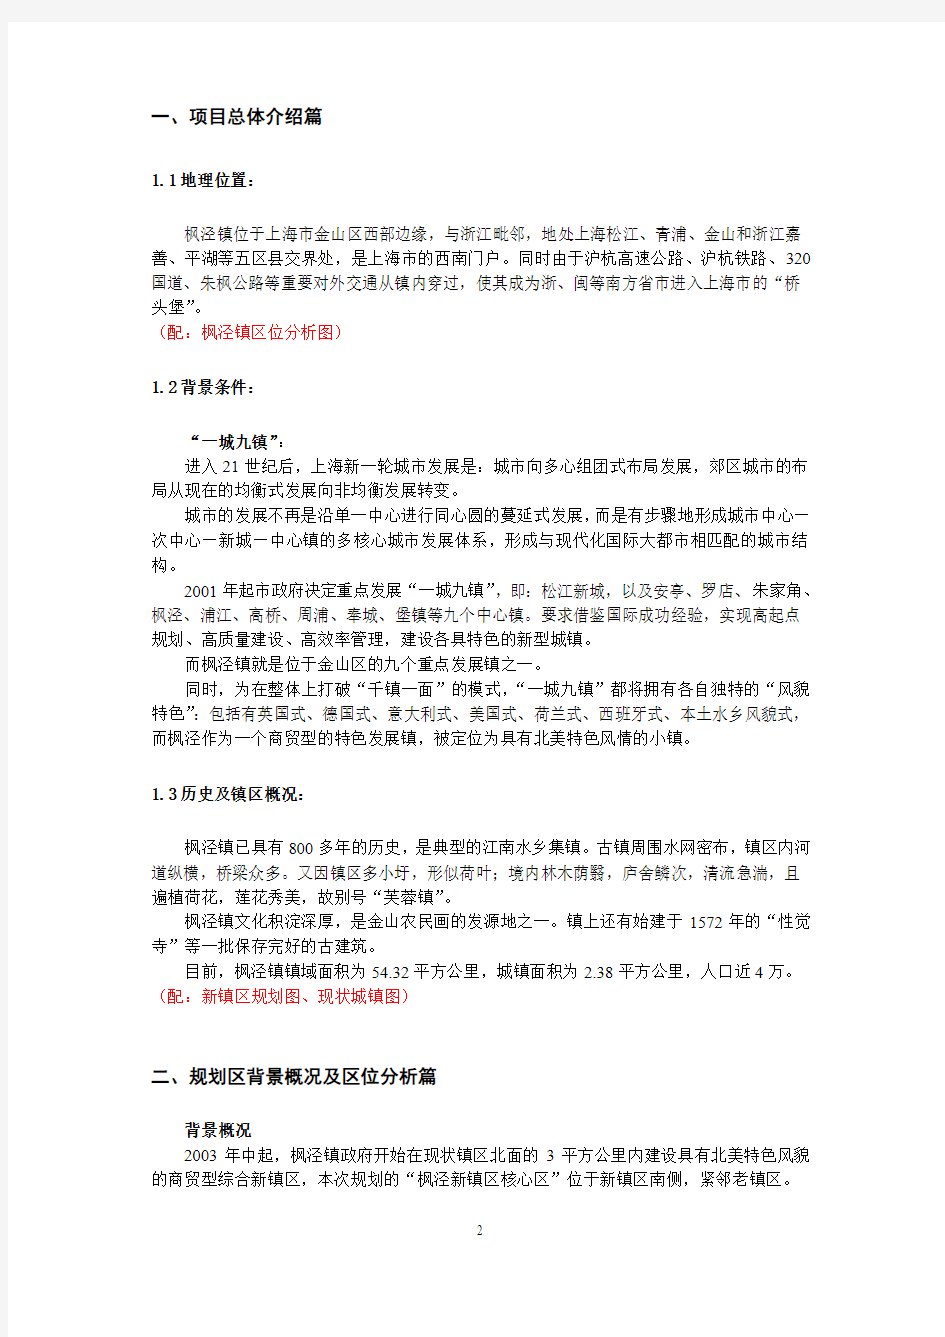 枫泾新镇核心区概念性规划方案(同济)讲解